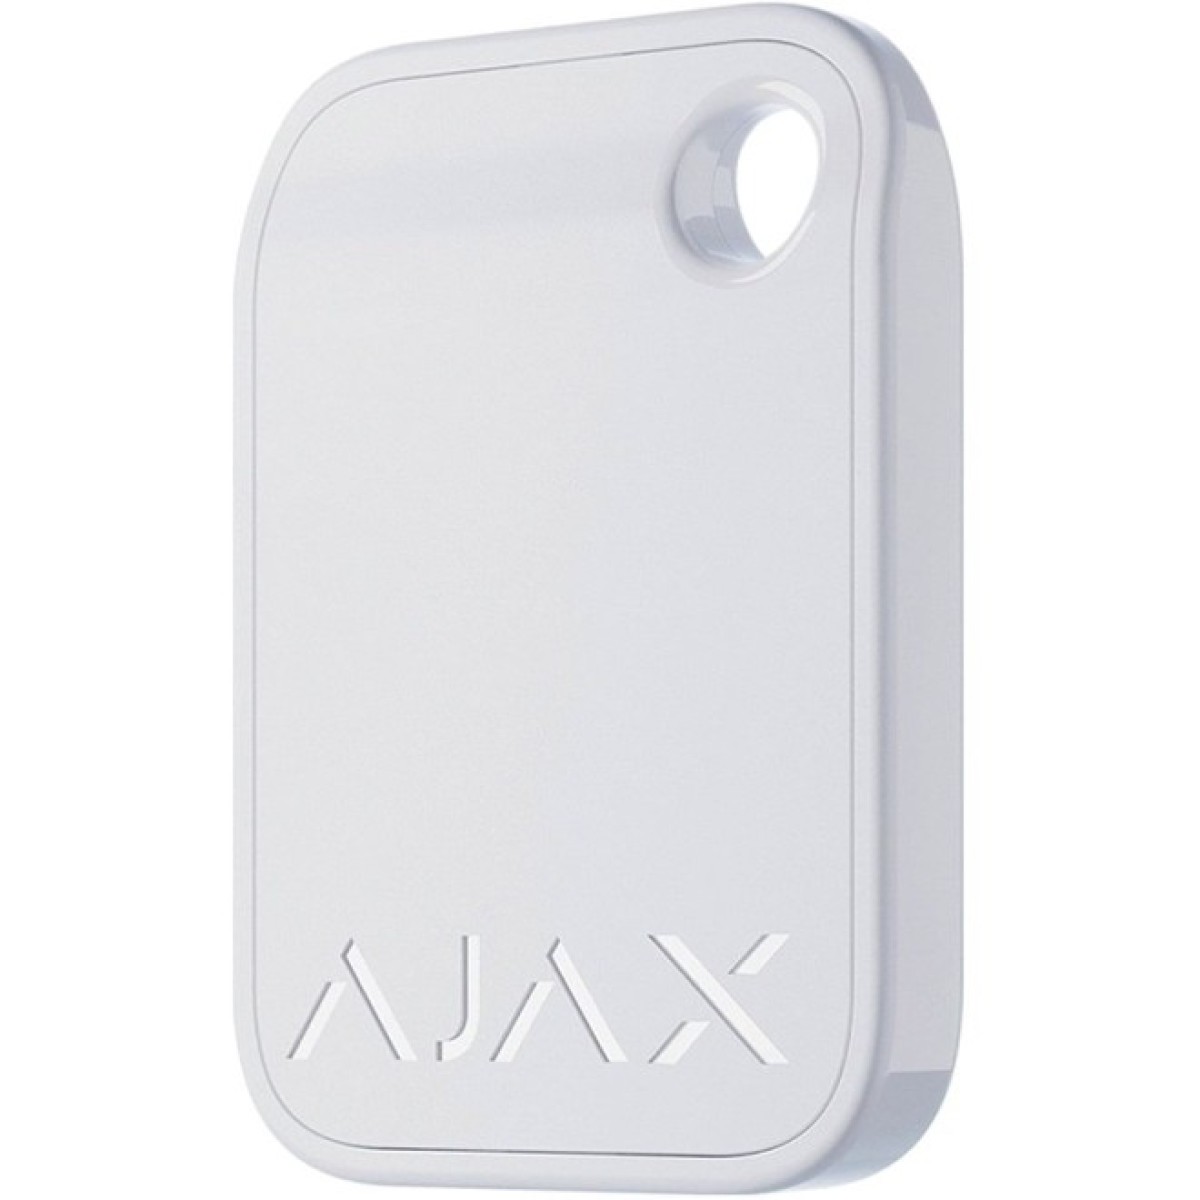 Брелок для охранной системы Ajax Tag White /10 98_98.jpg - фото 2